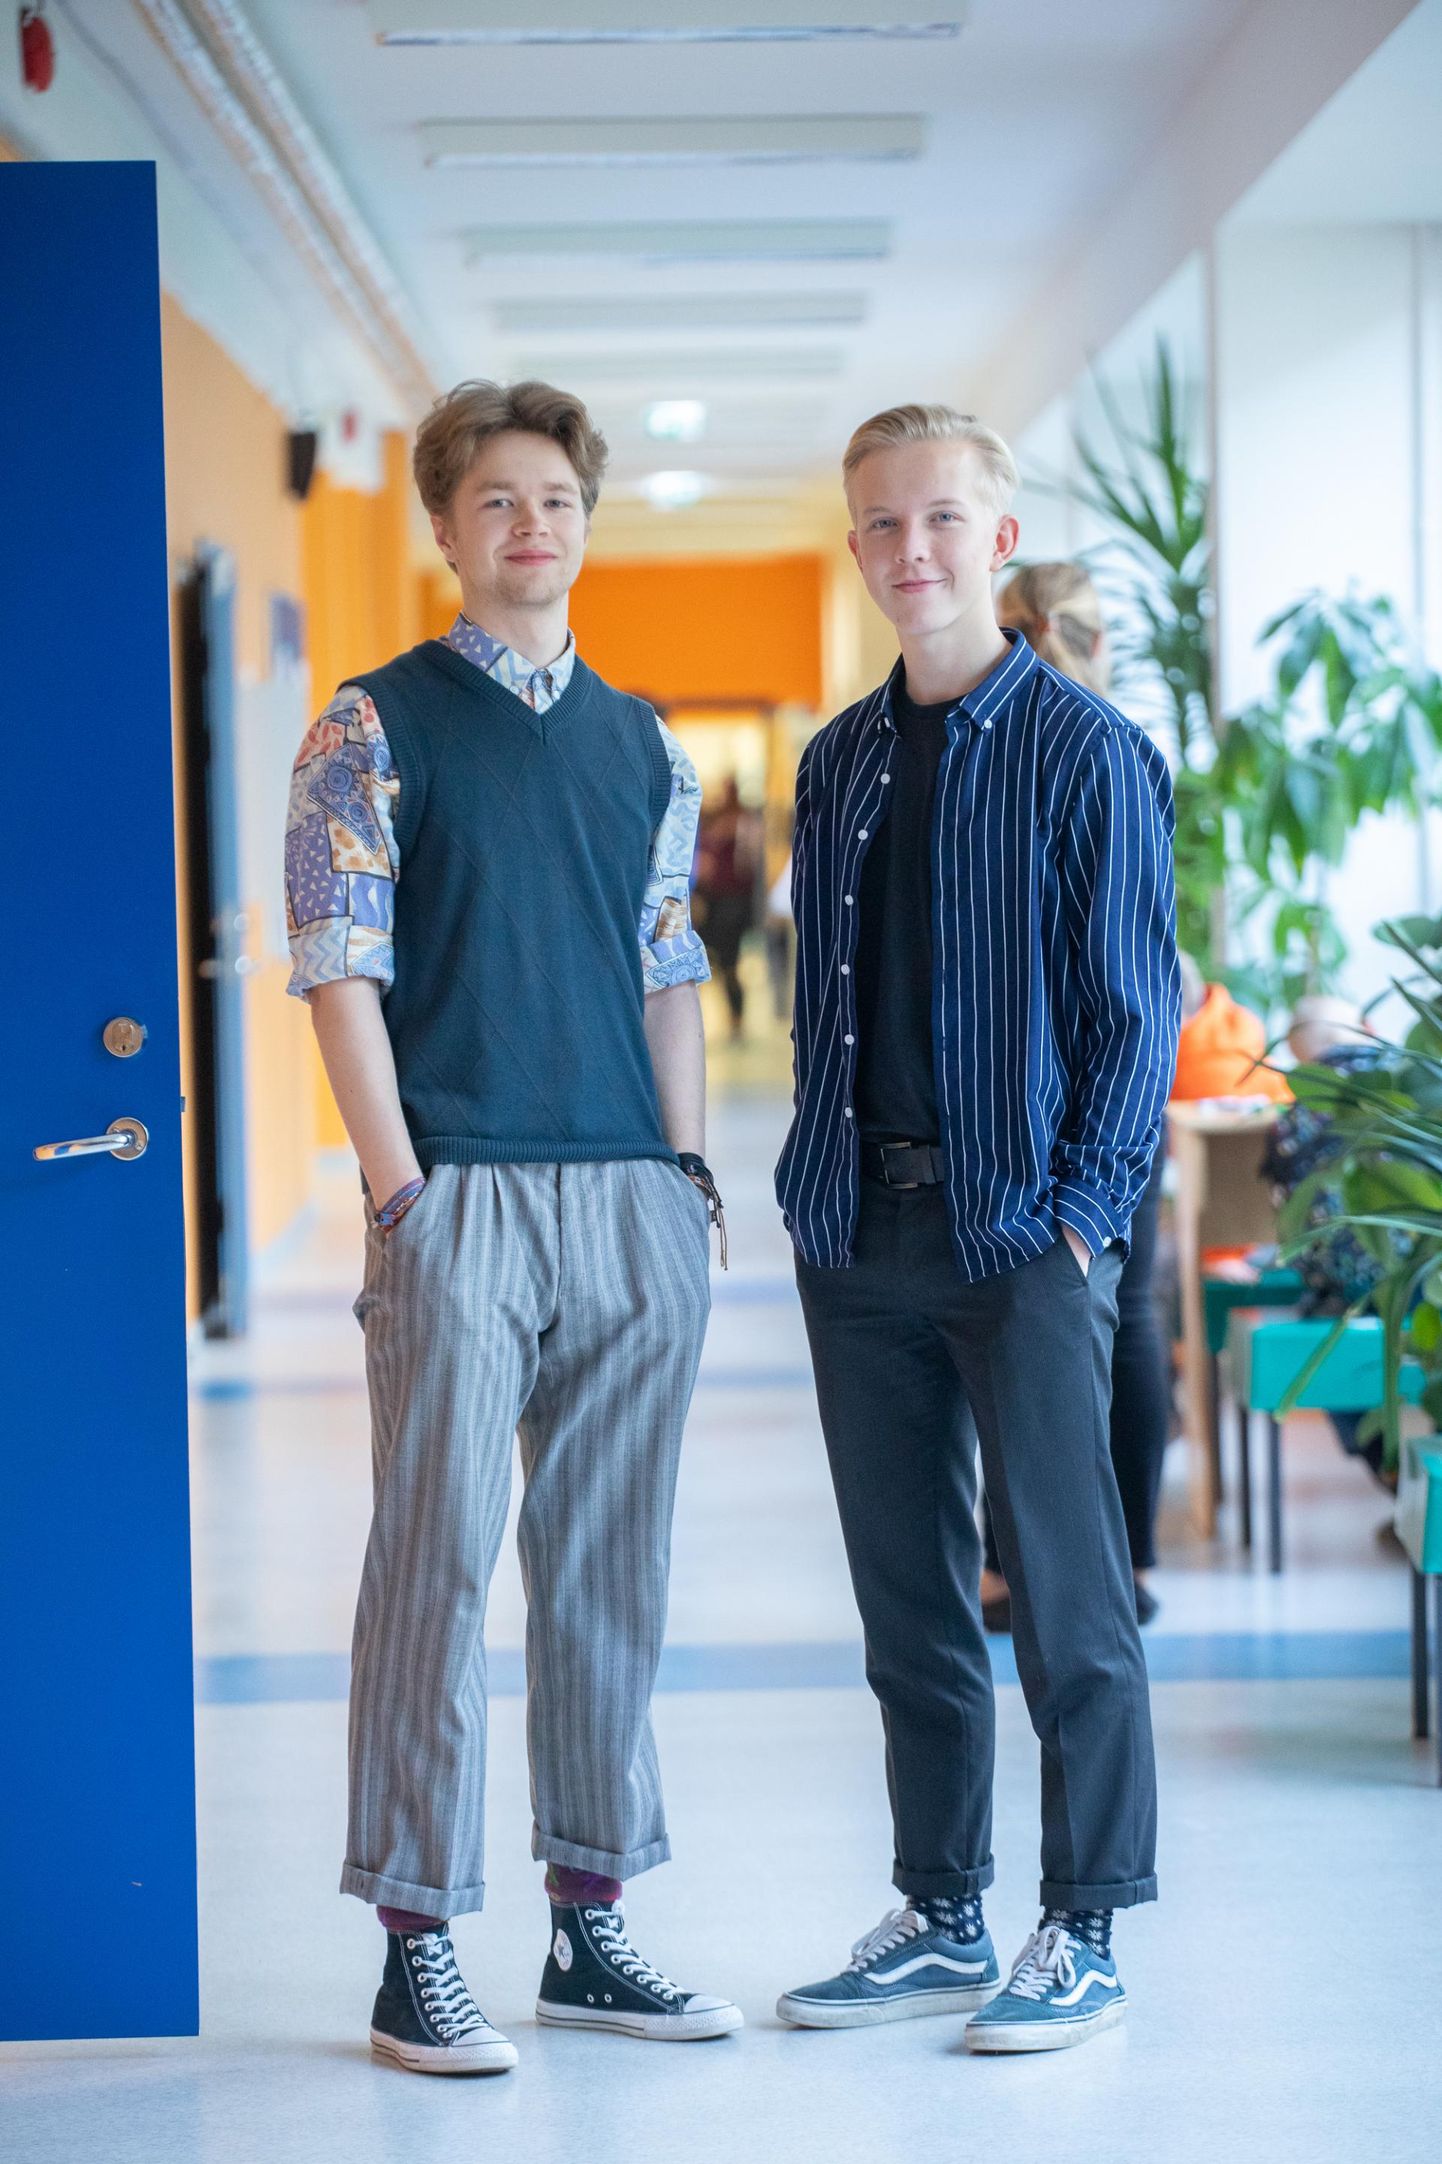 Väike-Maarja gümnaasiumi õpilased Villem Sepping (18) (vasakul) ja Timo Seppern (18) on noormehed, kes julgevad riietusega massist eristuda.